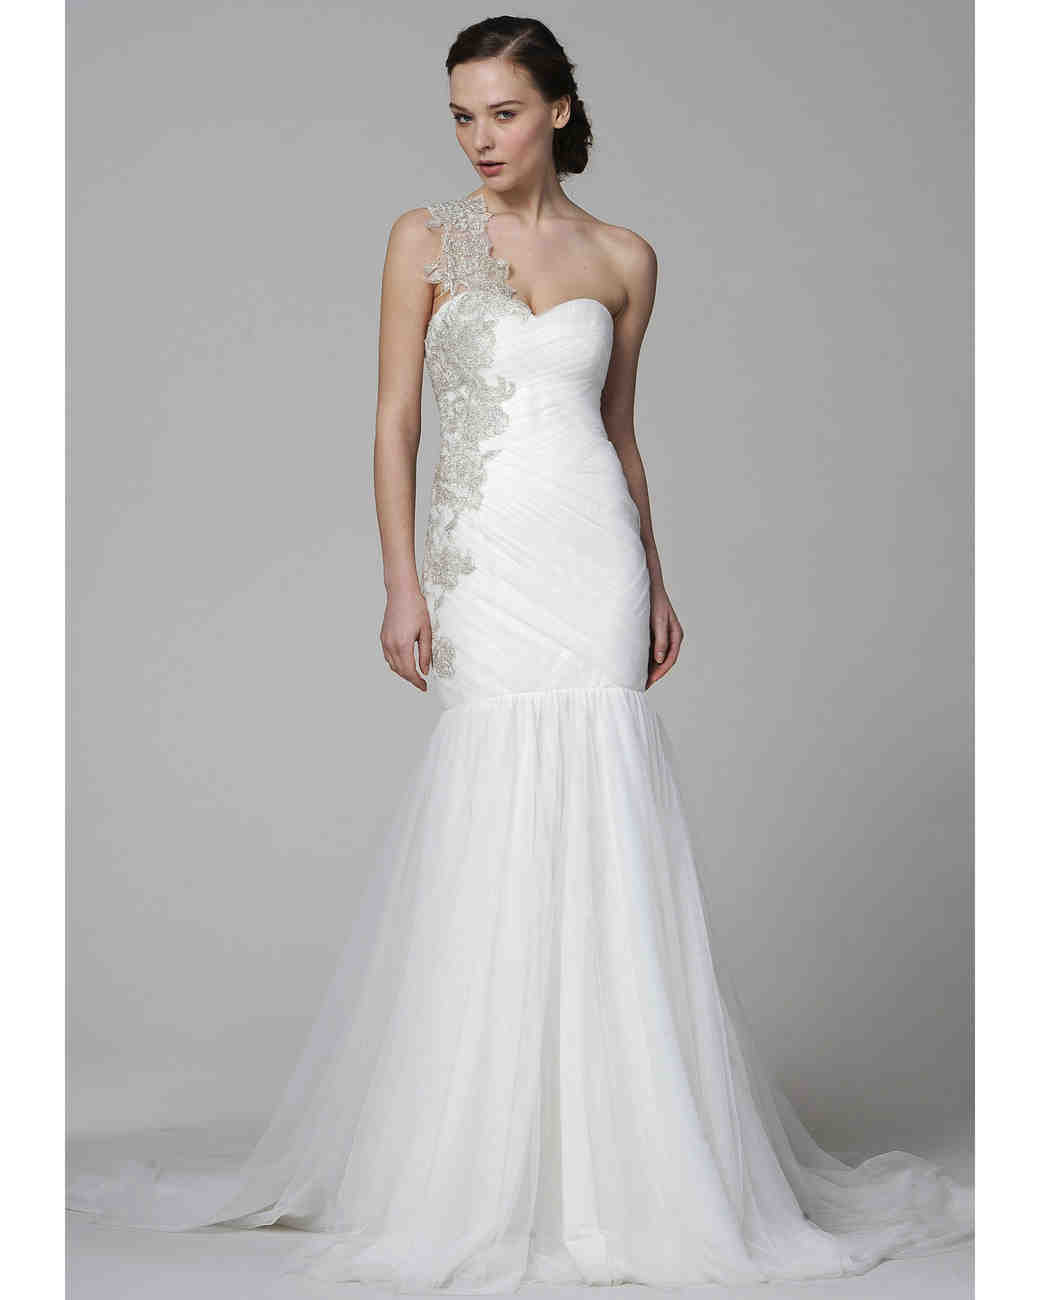 One Shoulder Wedding Dress
 e Shoulder Wedding Dresses Spring 2013 Bridal Fashion